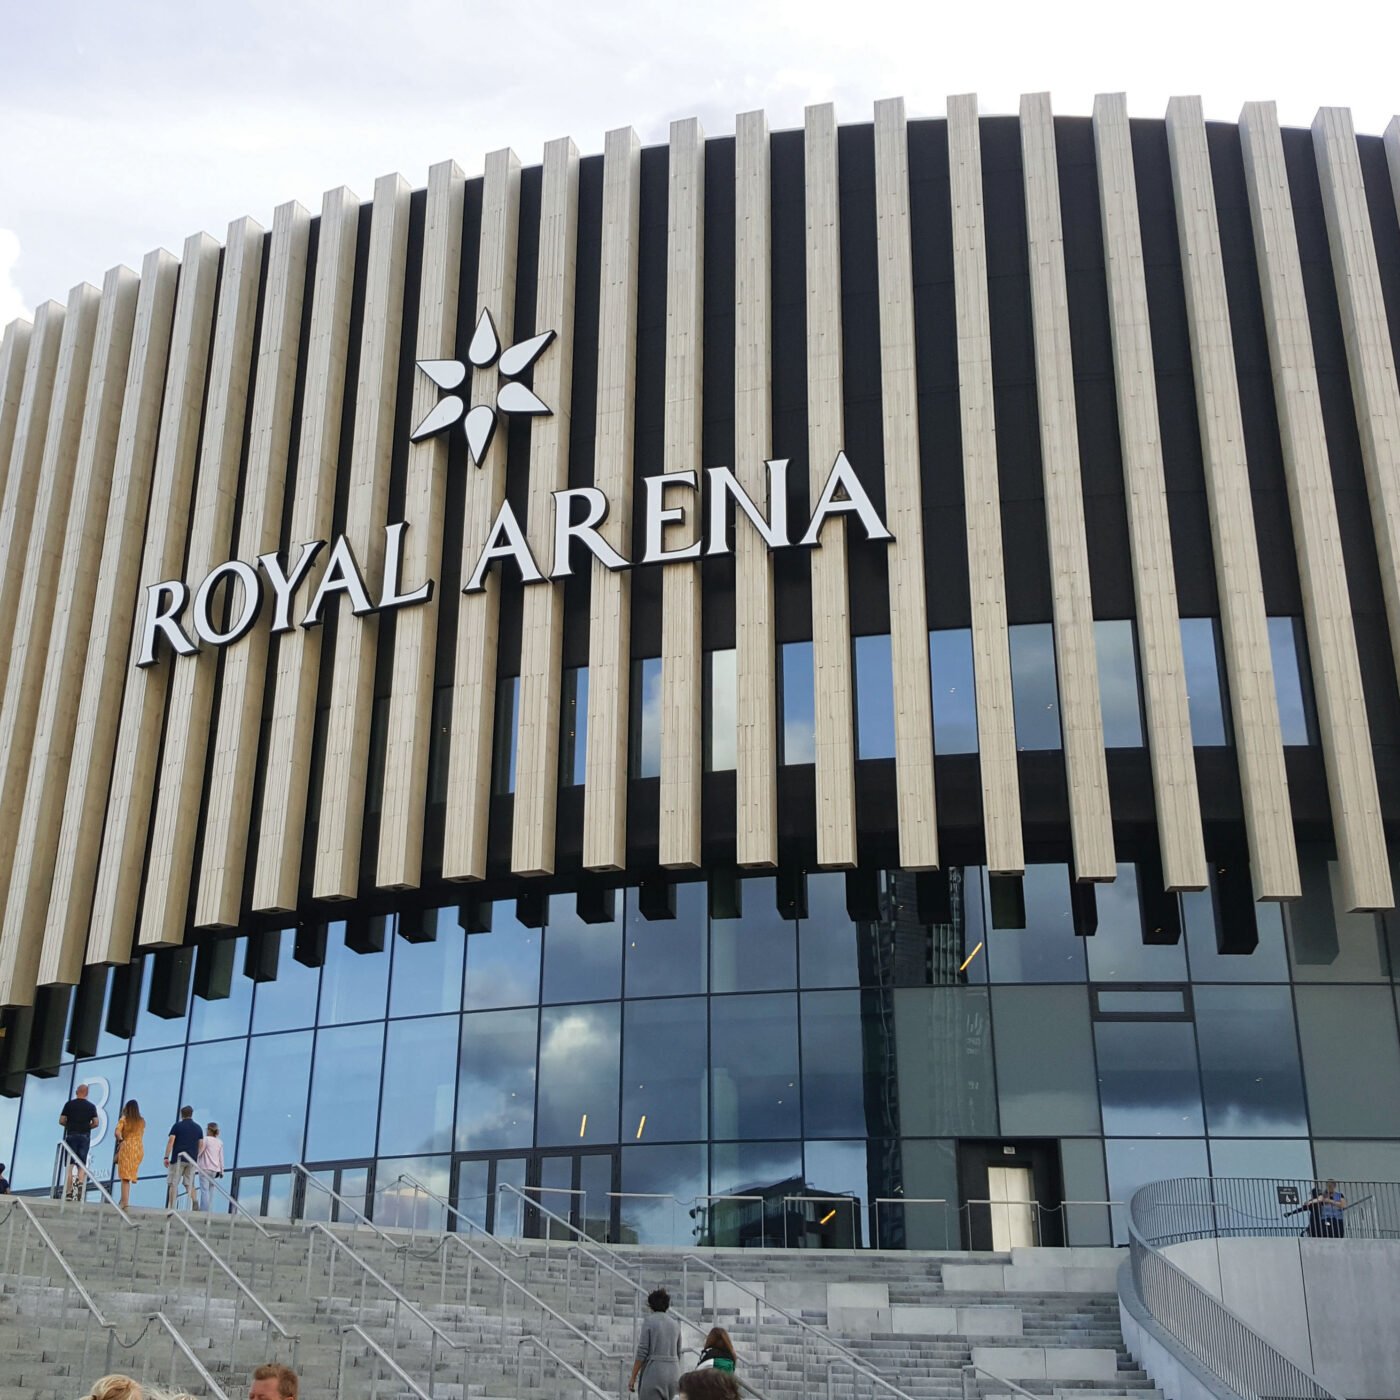 Royal Arena, Kopenhagen